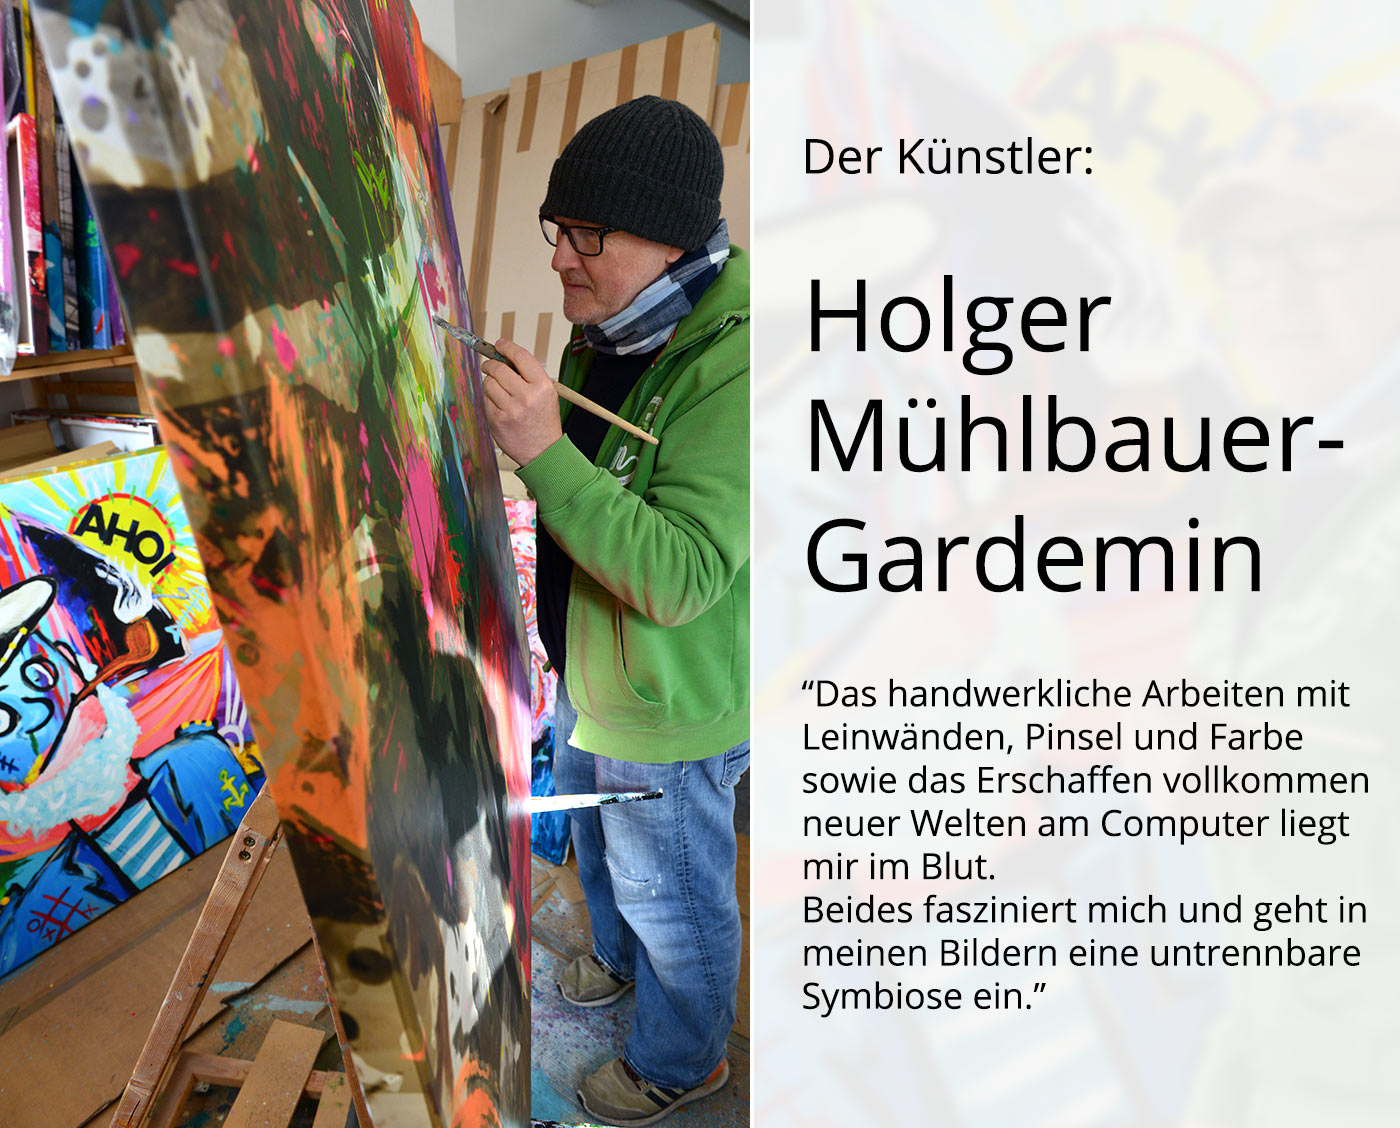 H. Mühlbauer-Gardemin: "Berlin im Jahr 2021", Moderne Pop Art, Original/serielles Unikat